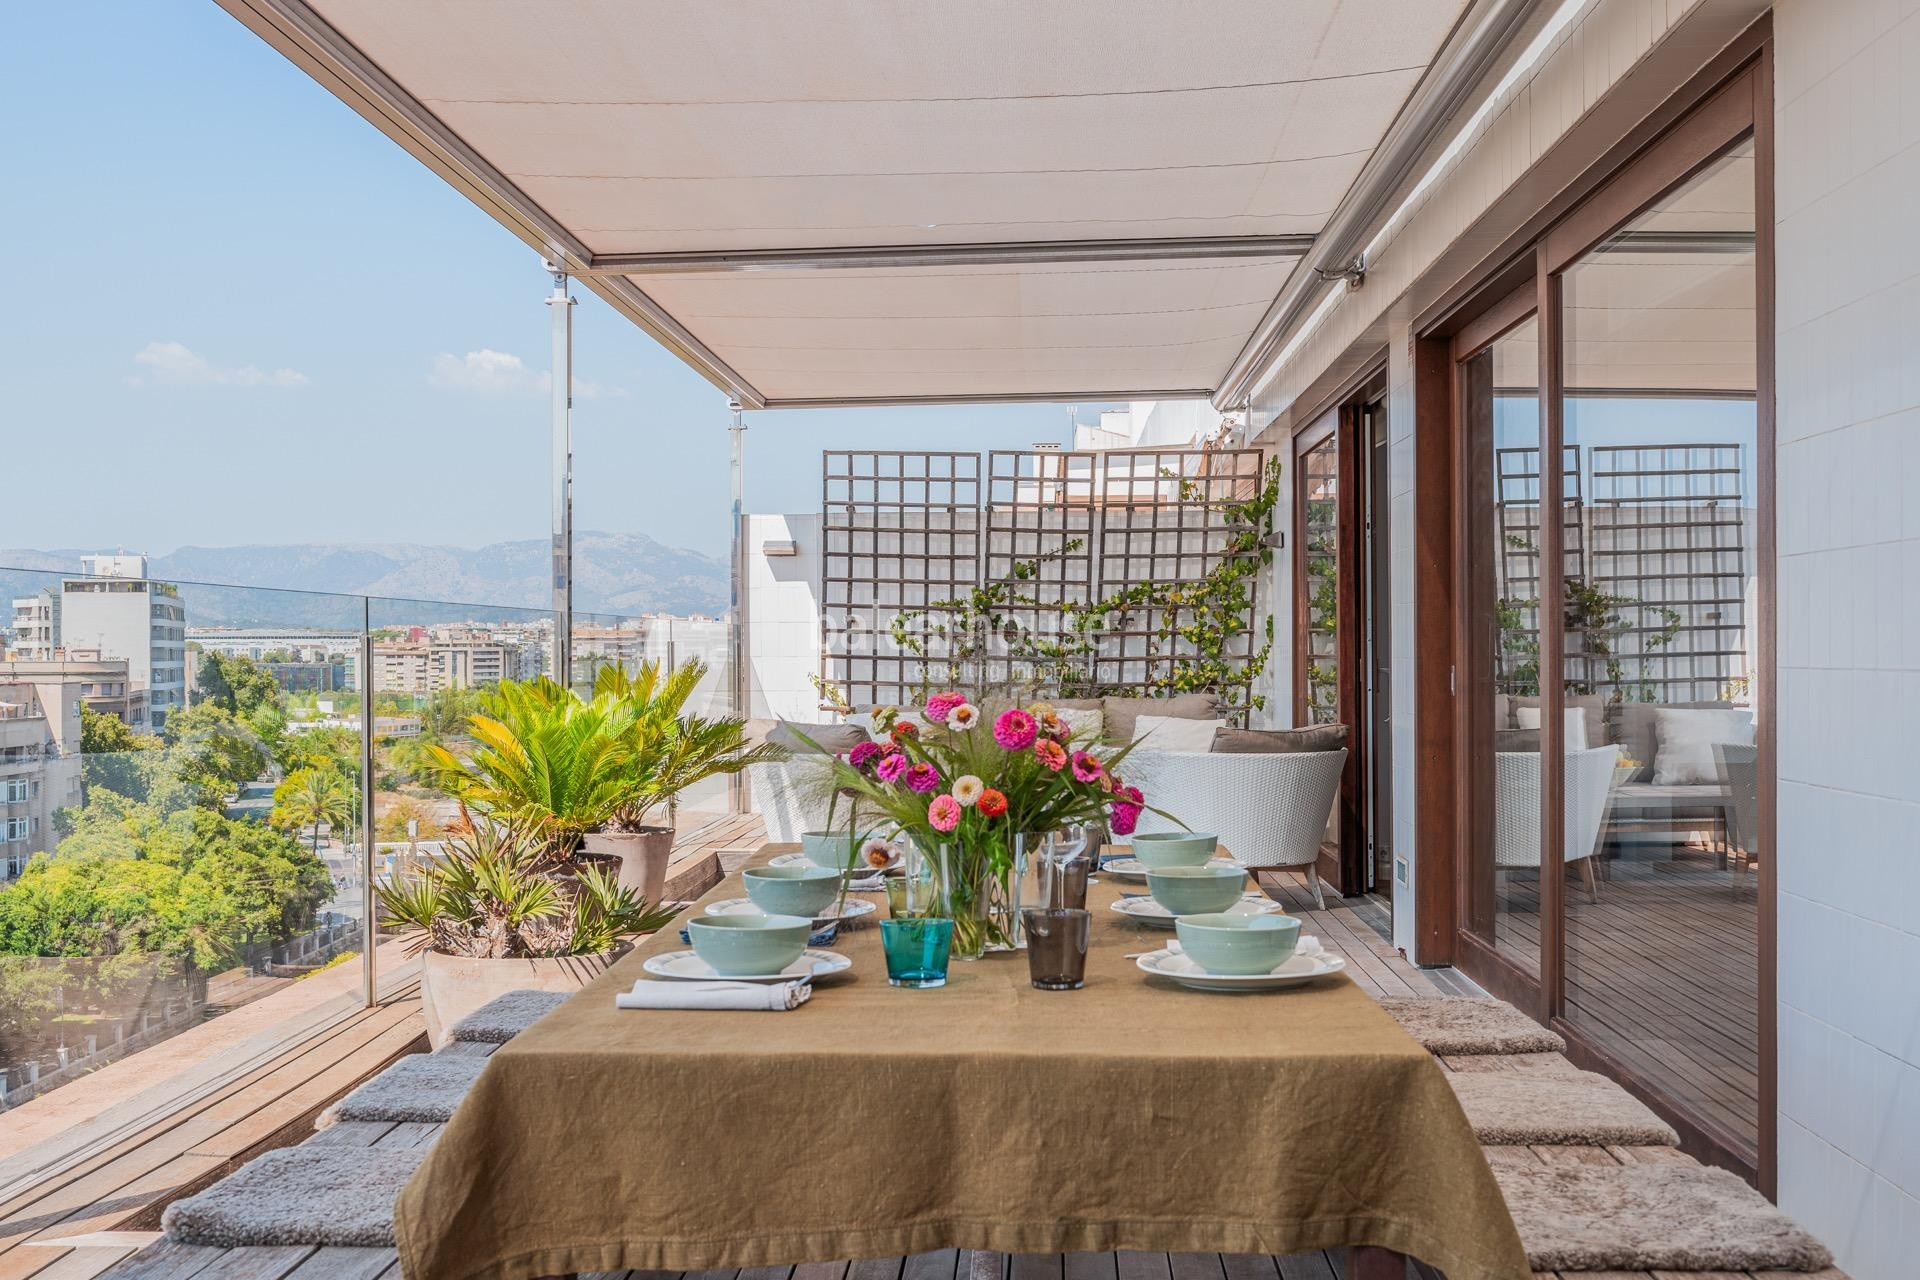 Excelente ático en el Paseo Mallorca de Palma con gran terraza y fantásticas vistas a toda la ciudad